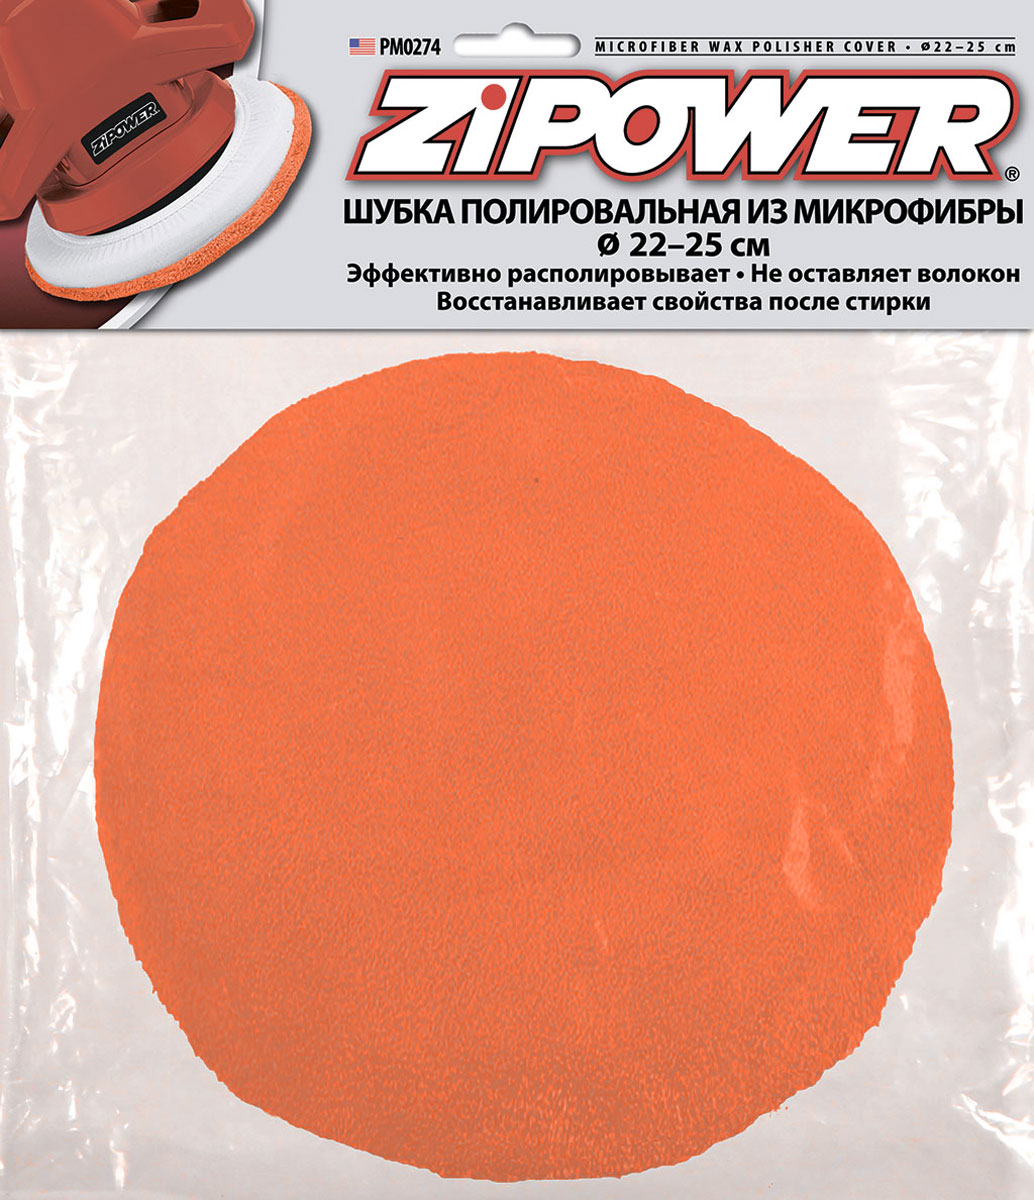 фото Шубка полировальная "Zipower", из микрофибры, диаметр 22-25 см